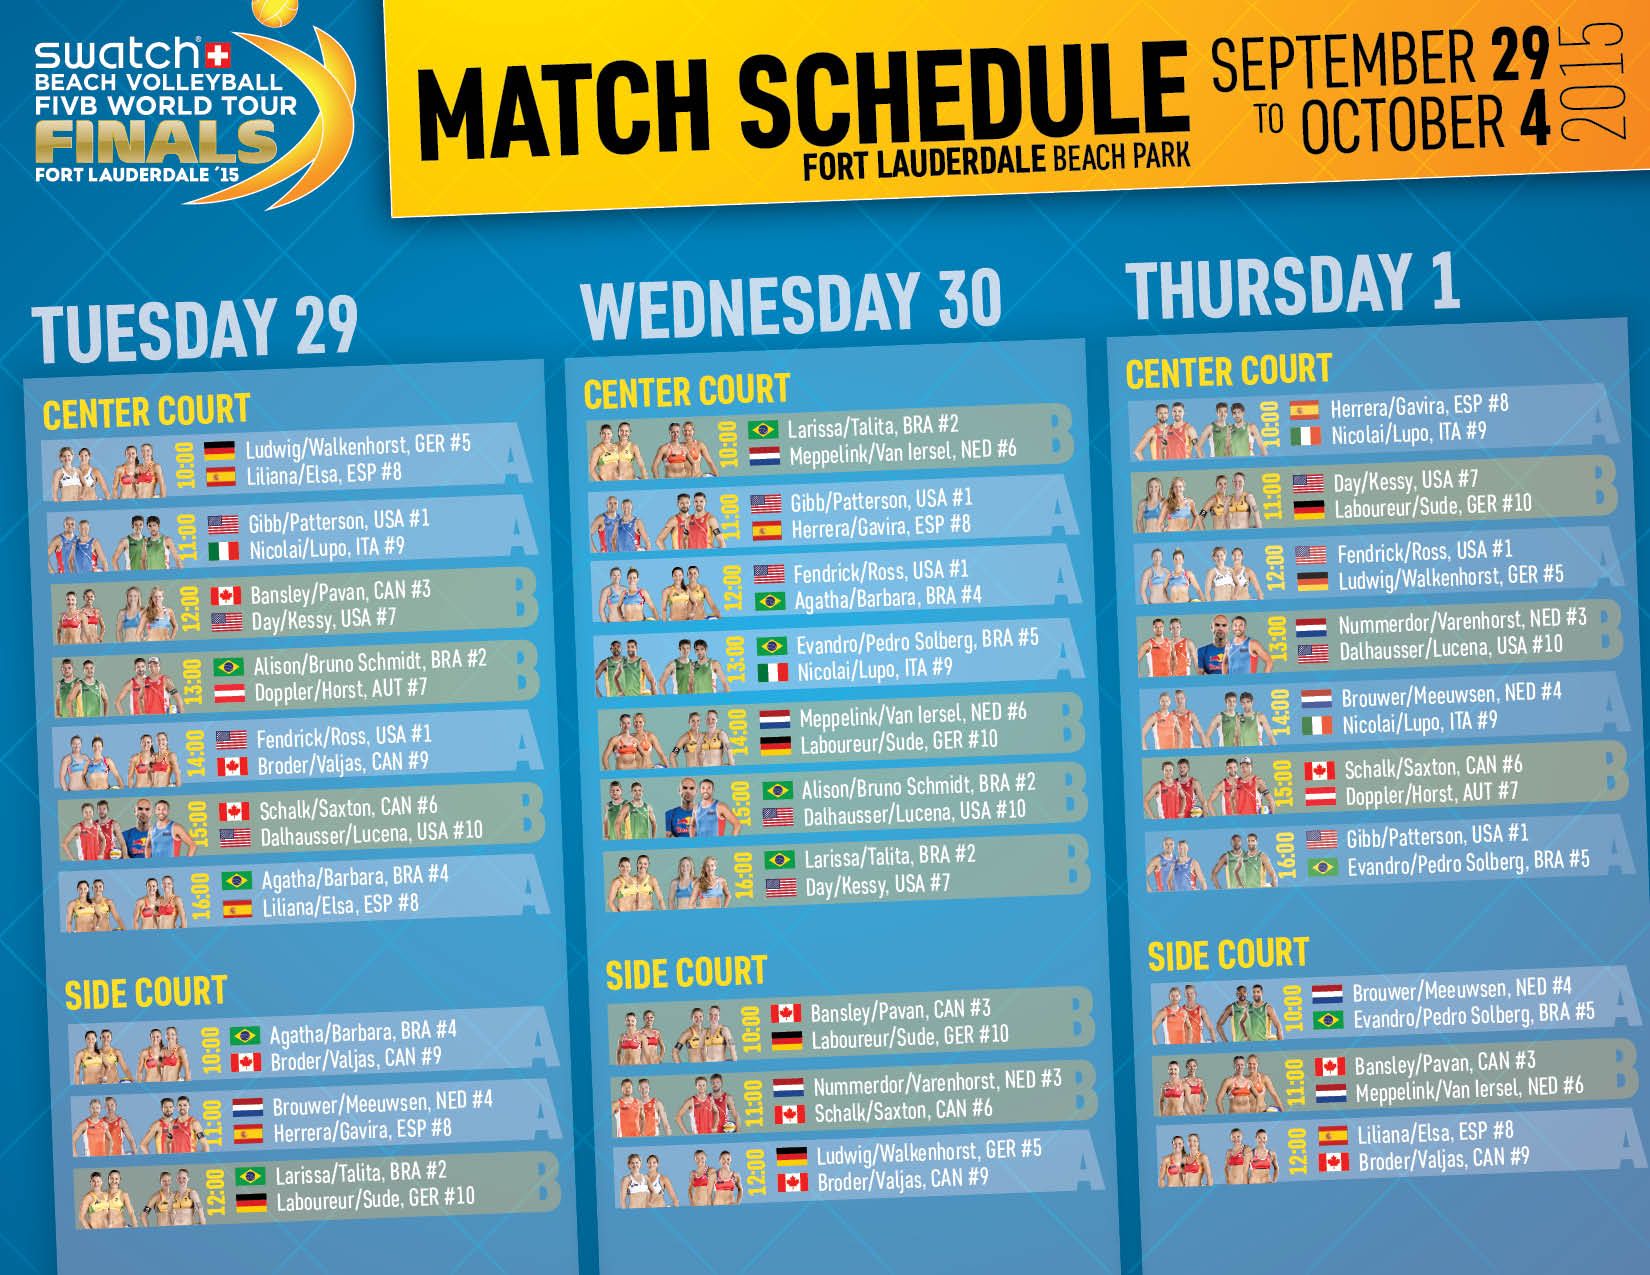 #SwatchWTFinalsUSA: Match Schedule Sept. 29 – Oct. 1